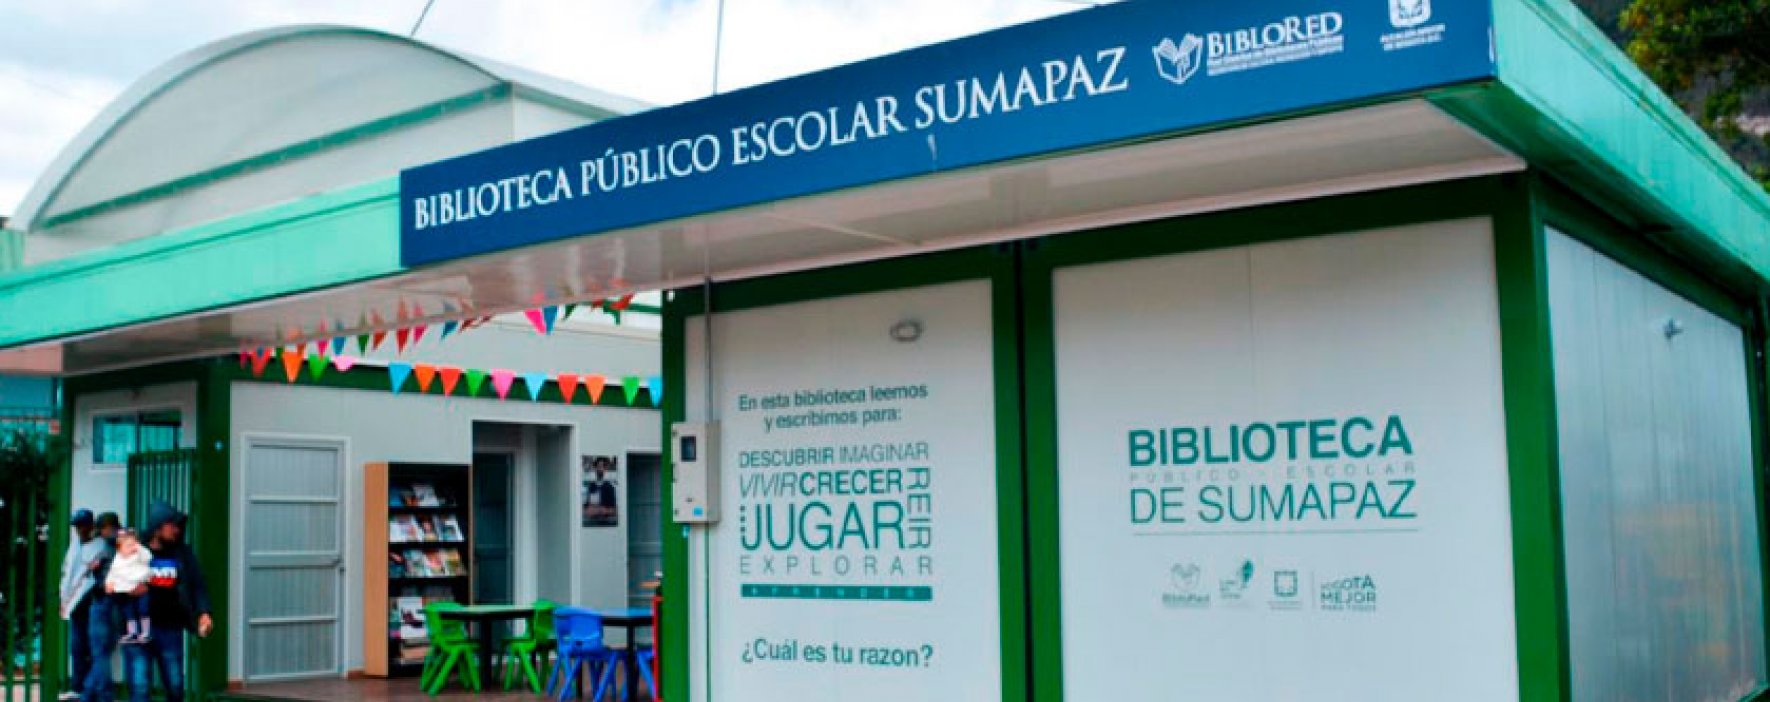 Biblioteca del Sumapaz entre las 20 finalistas al Premio Daniel Samper Ortega